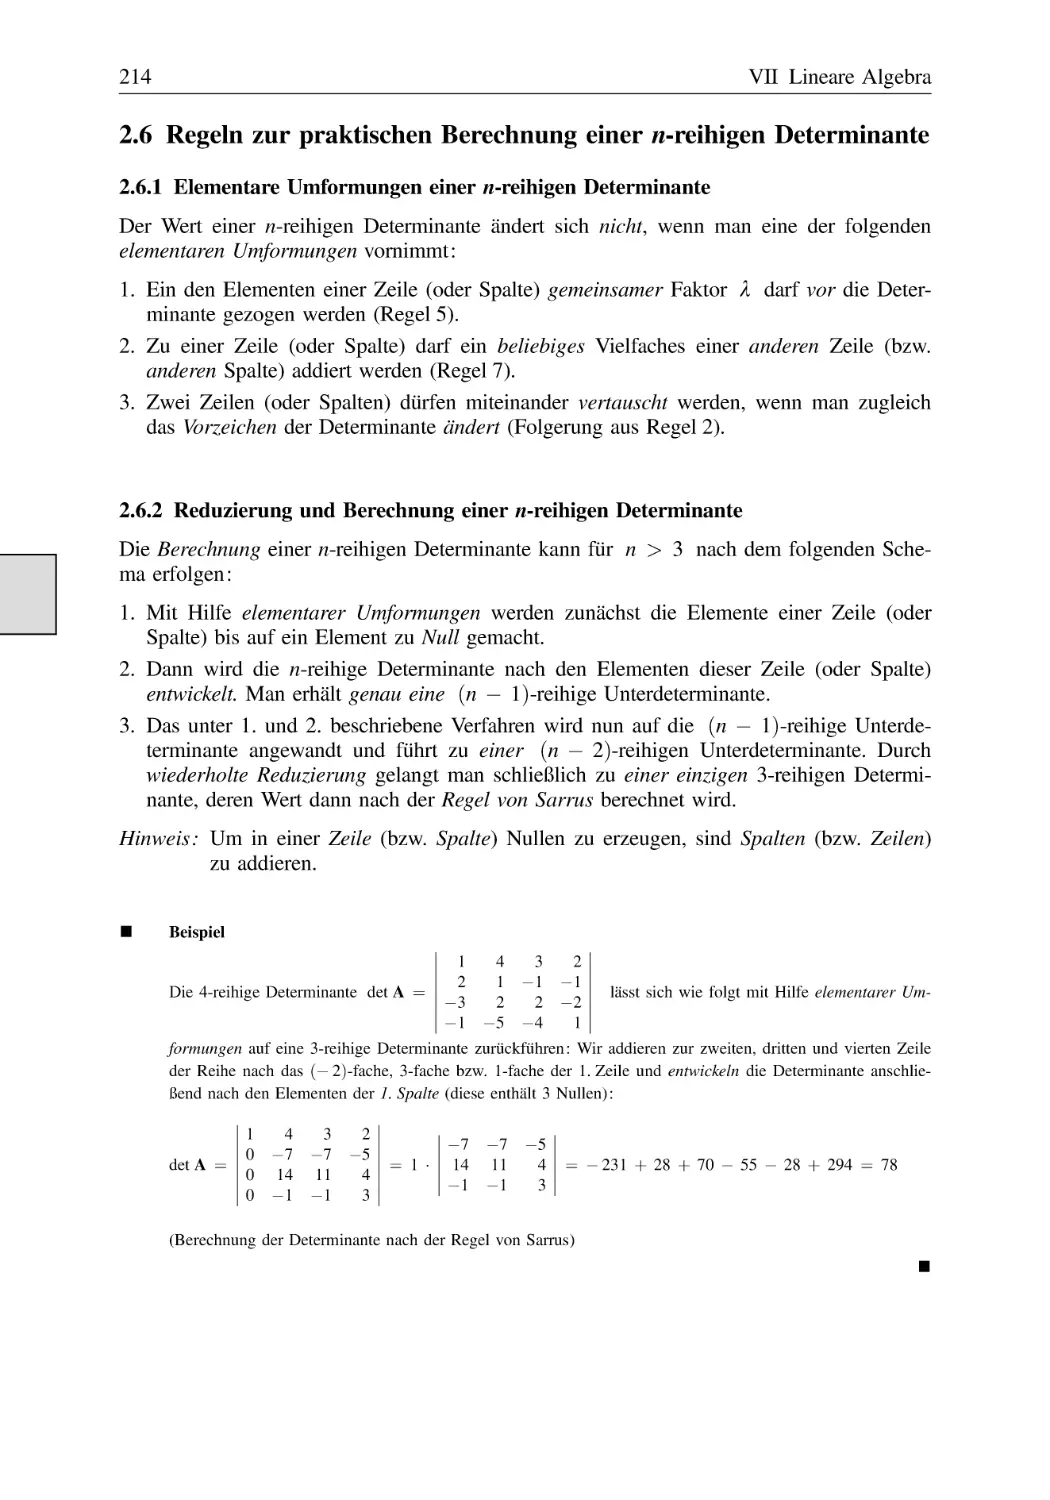 2.6 Regeln zur praktischen Berechnung einer n-reihigen Determinante
2.6.1 Elementare Umformungen einer n-reihigen Determinante
2.6.2 Reduzierung und Berechnung einer n-reihigen Determinante